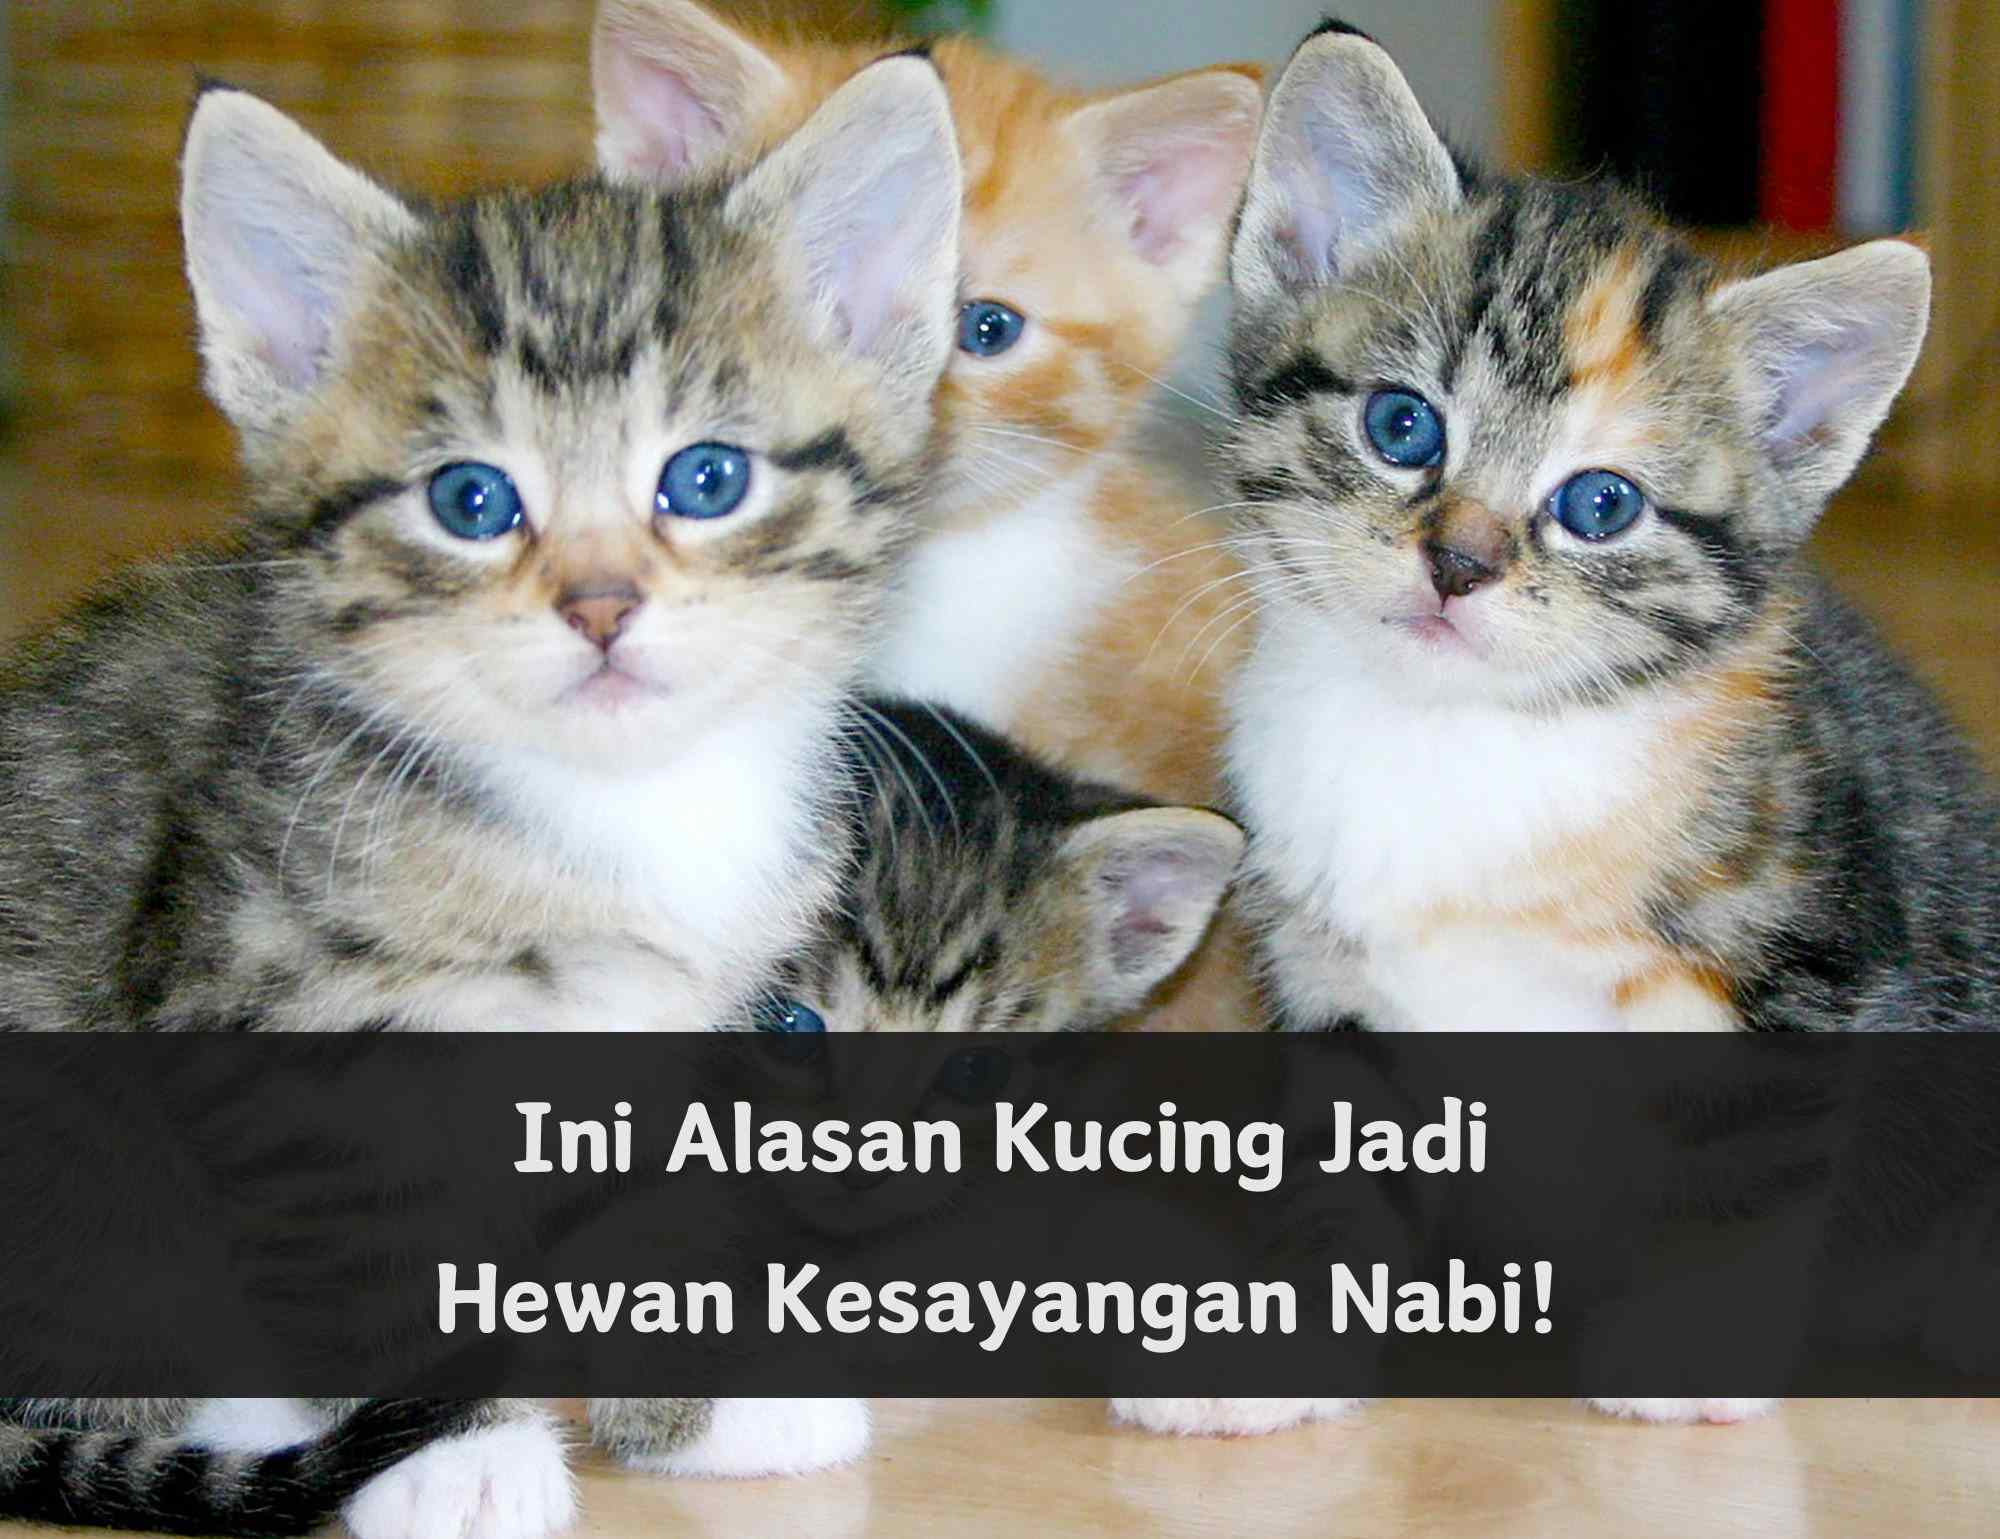 Ternyata Ini 6 Alasan Kucing Jadi Kesayangan Nabi Muhammad SAW, Salah Satunya Mendatangkan Rahmat Allah SWT 